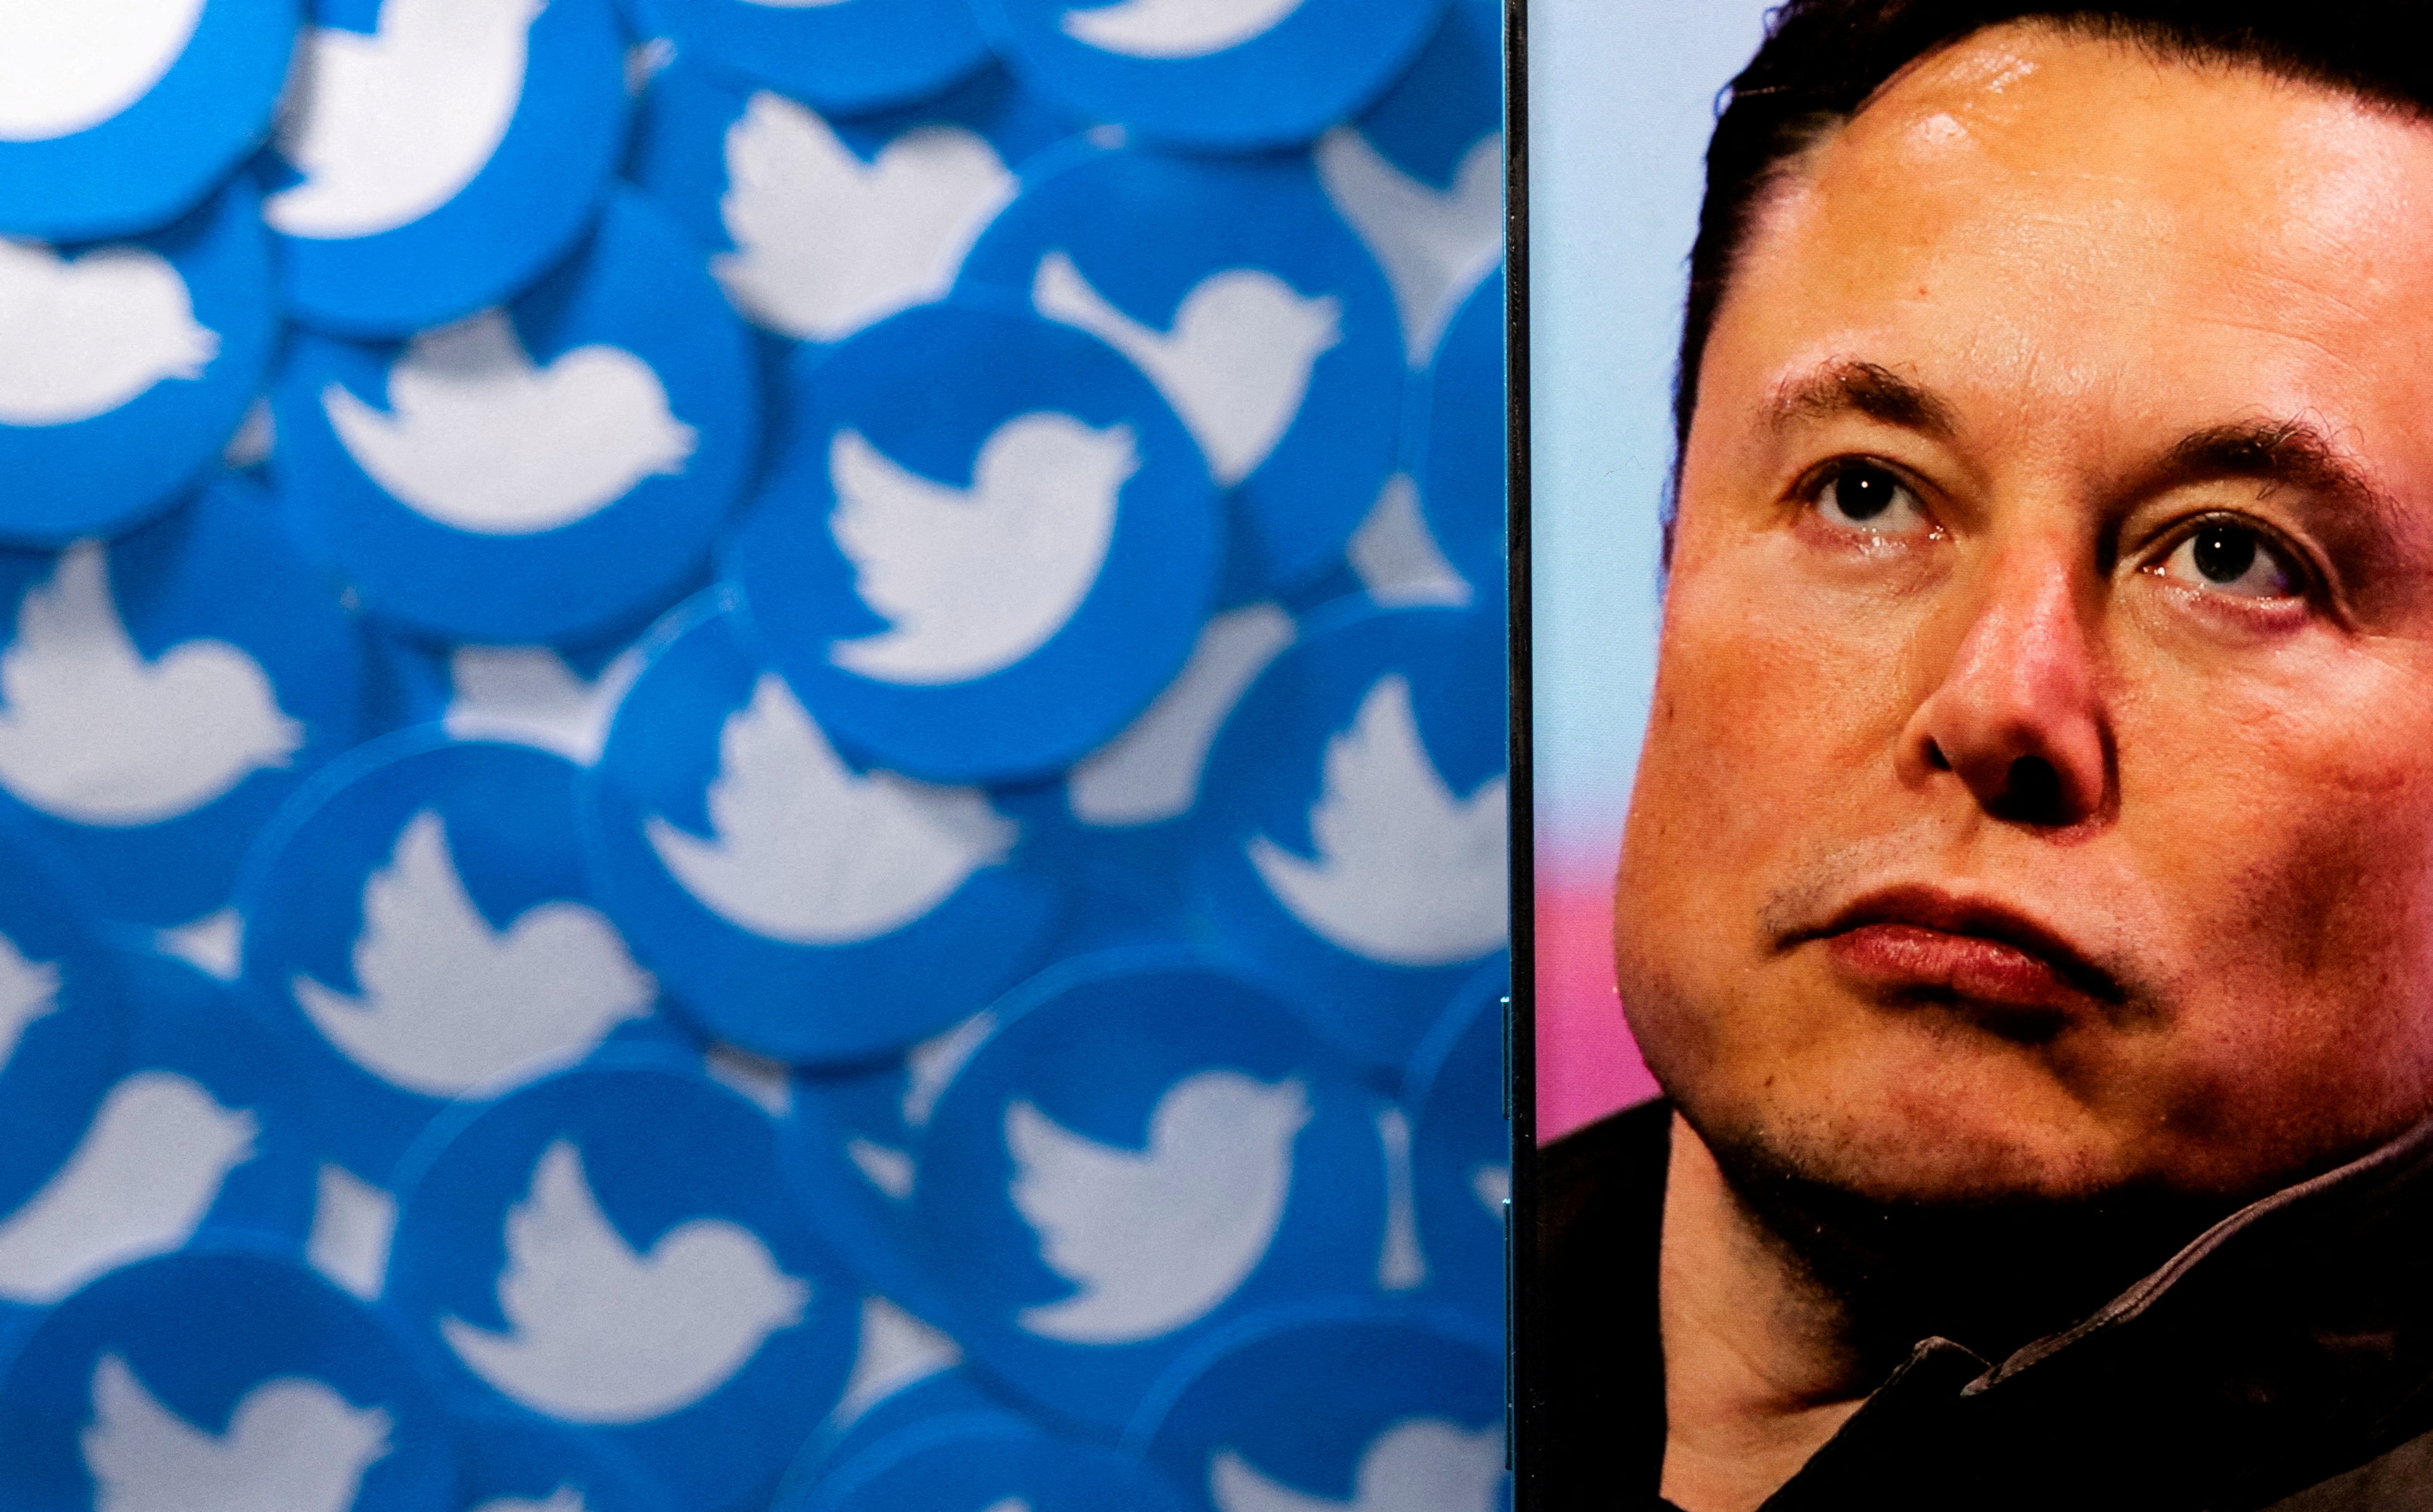 La compra de Twitter por parte de Elon Musk sumó otra polémica: un príncipe compró y vendió acciones en una semana